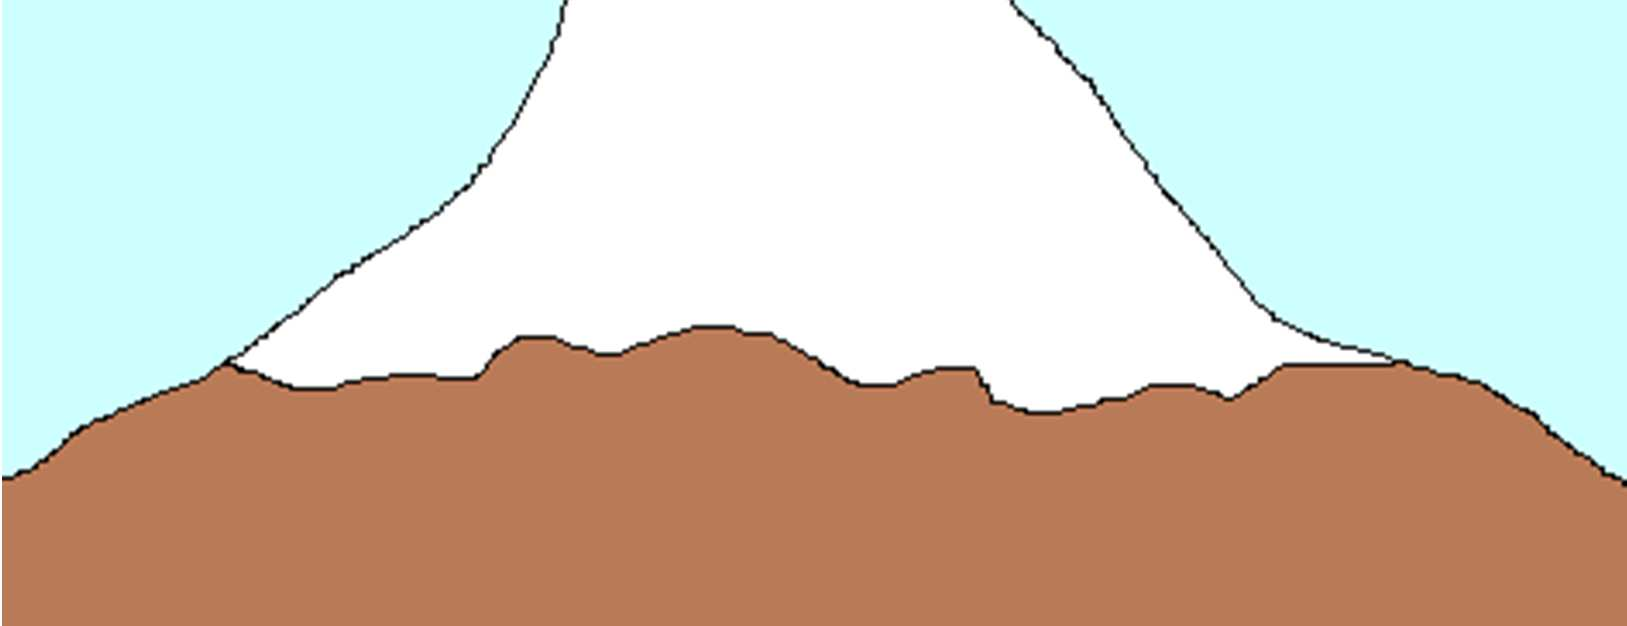 En la imagen (b) se puede apreciar como la nieve de la montaña se ha fundido en las partes bajas y en las partes altas no. (R.